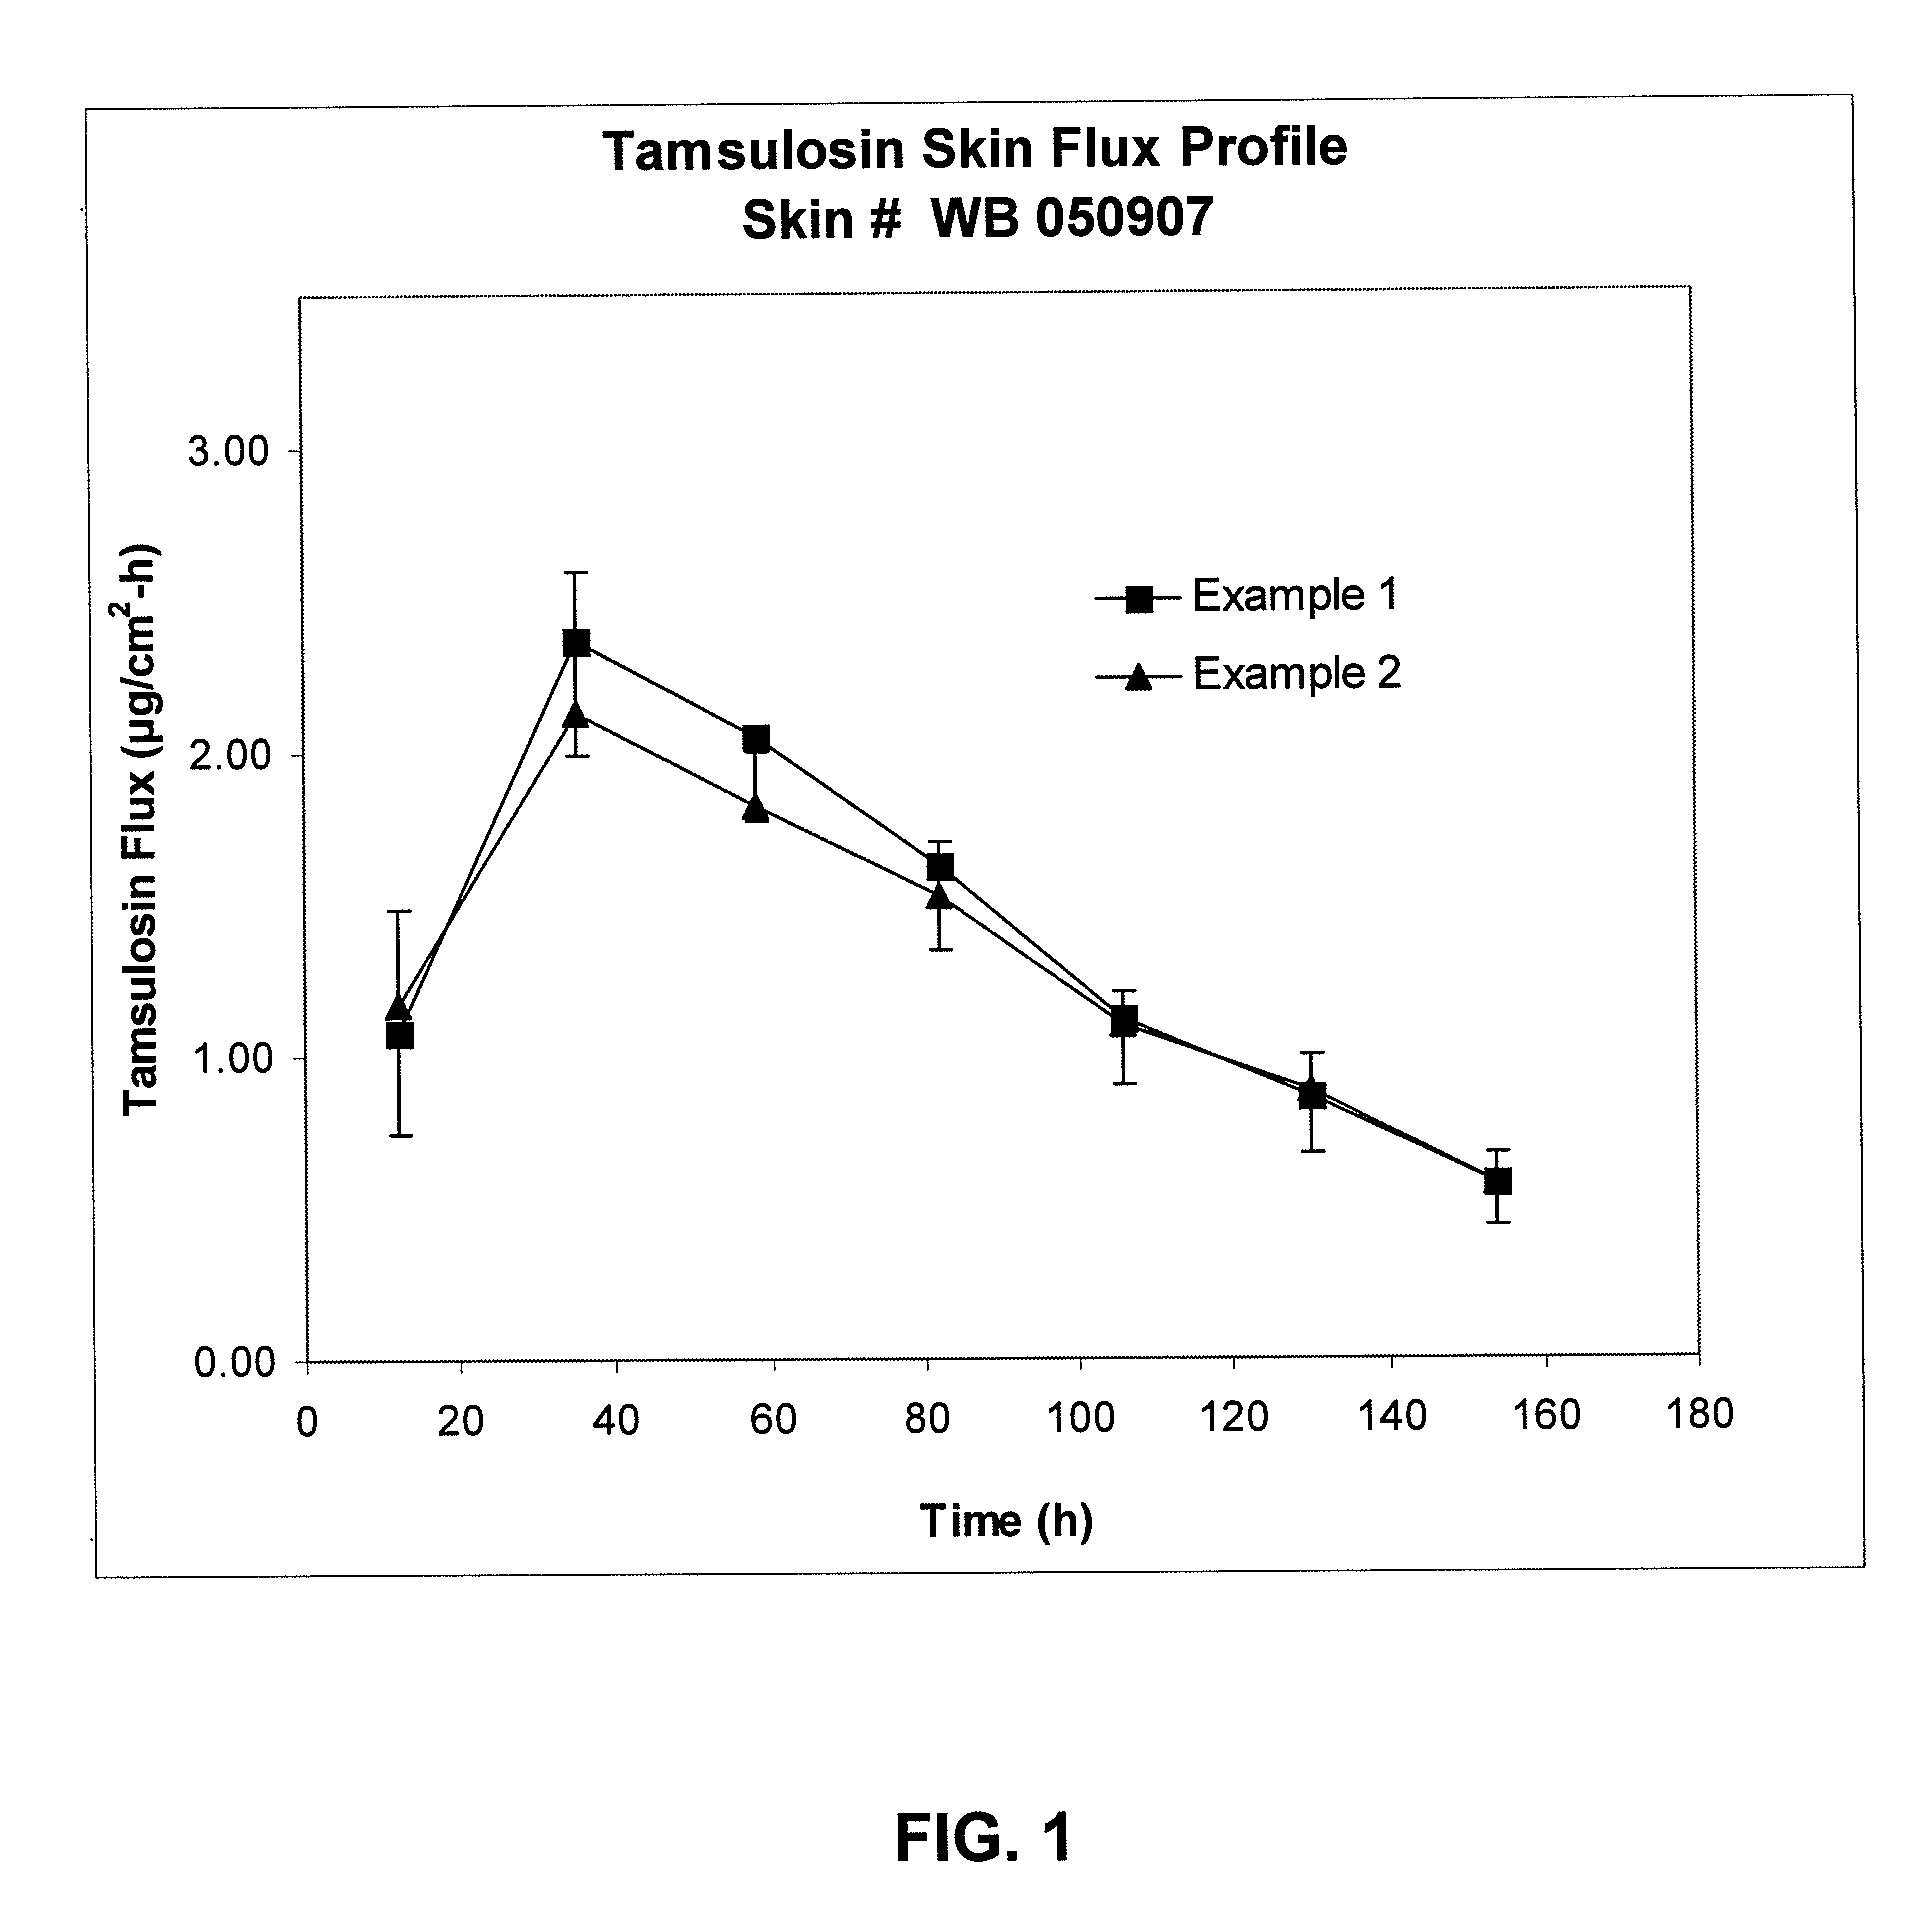 Transdermal administration of tamsulosin